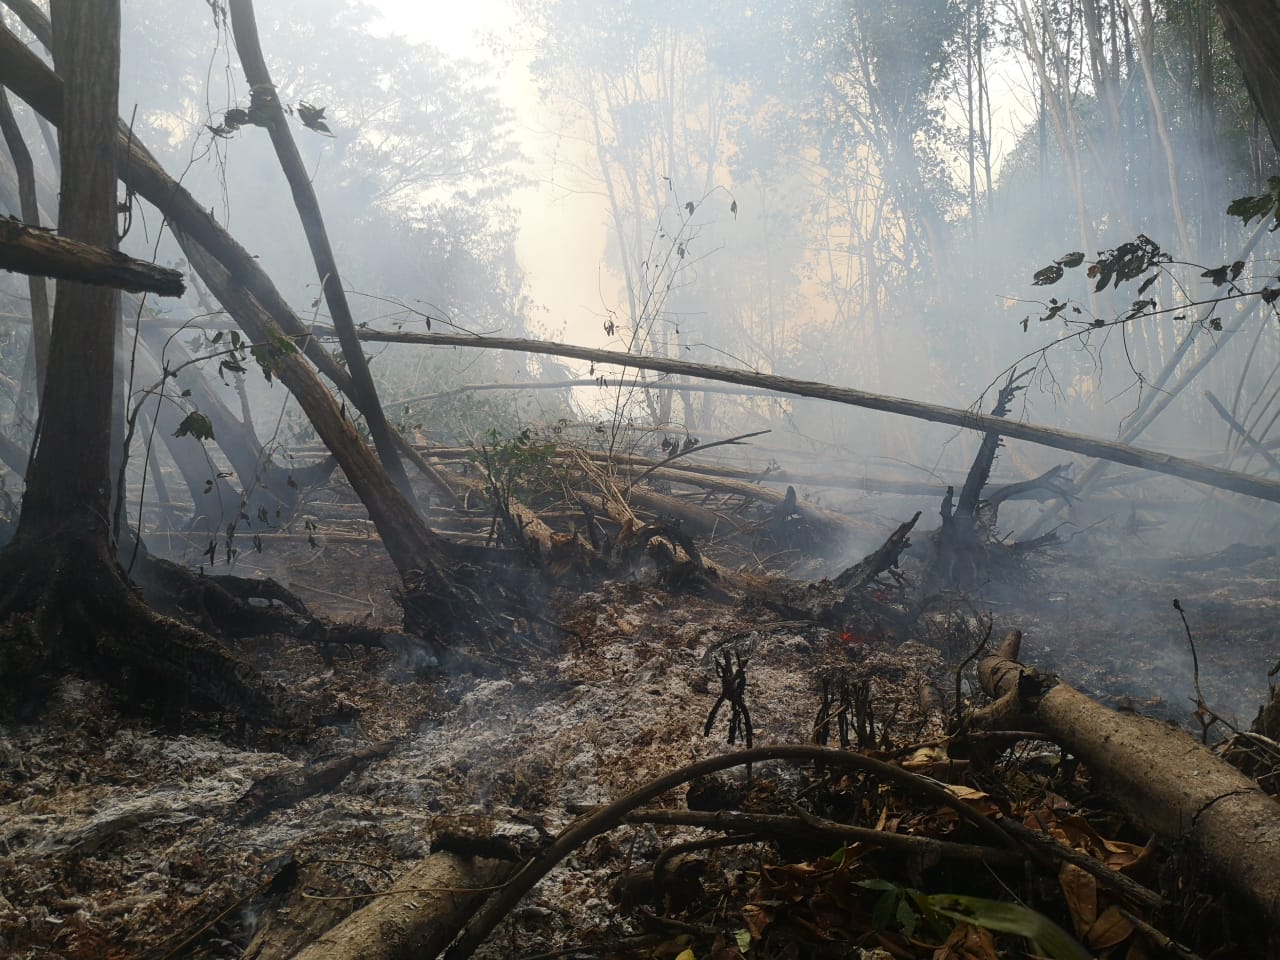 La restauración del bosque de mangle afectado por un incendio forestal en El Machón Guamuchal, Retalhuleu, llevará varios años. (Foto Prensa Libre: Cortesía Inab)